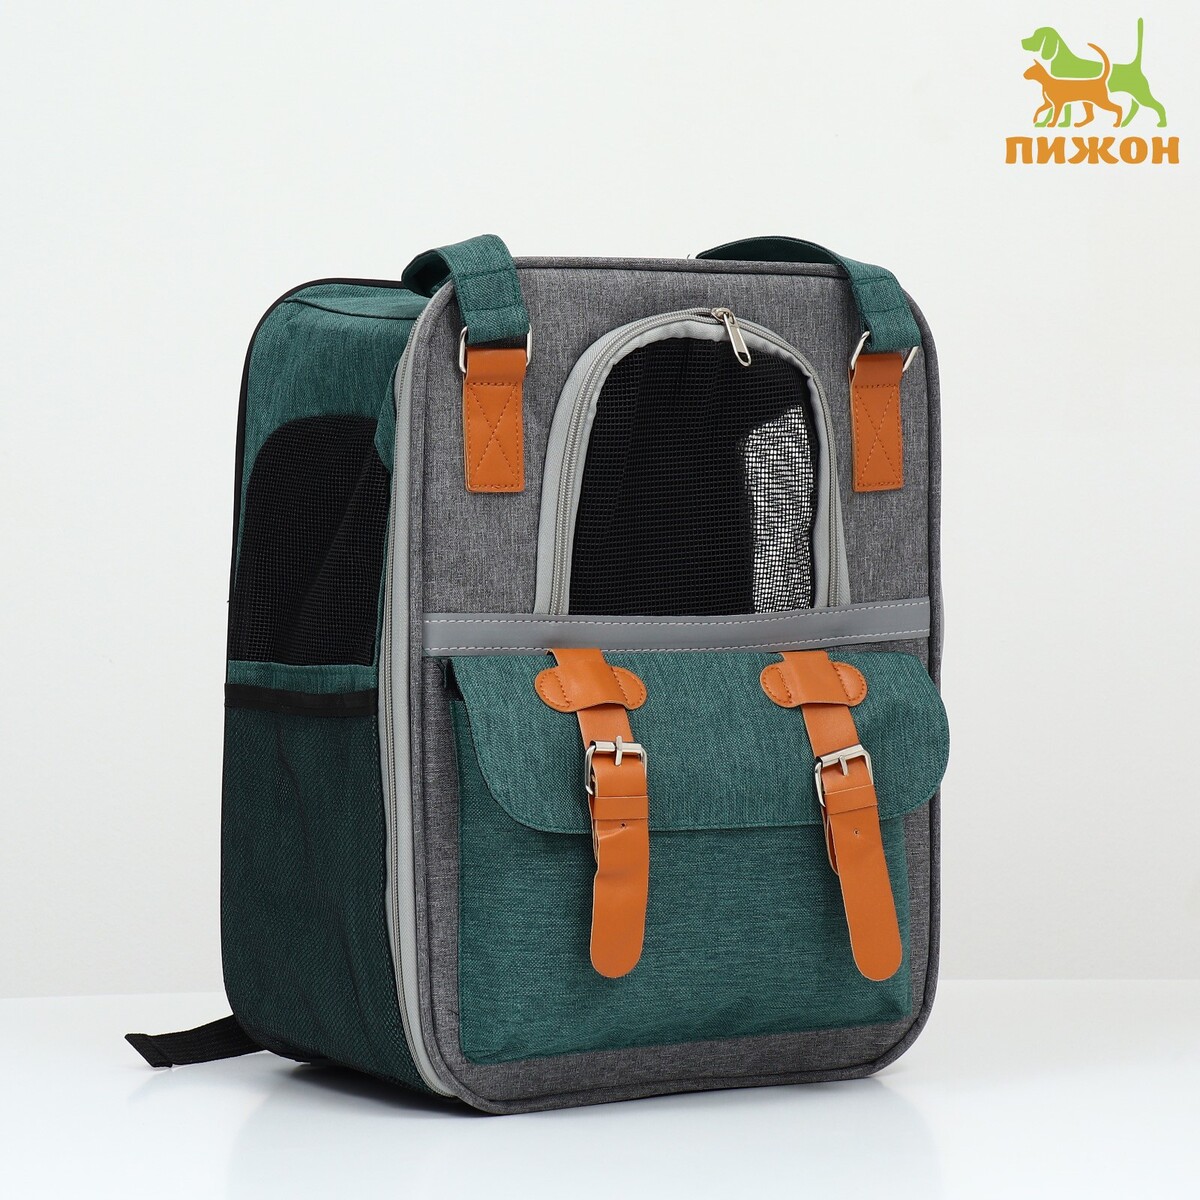 Рюкзак-переноска для животных, 52 х 22 х 41 см, зеленый рюкзак переноска waterland heart multi